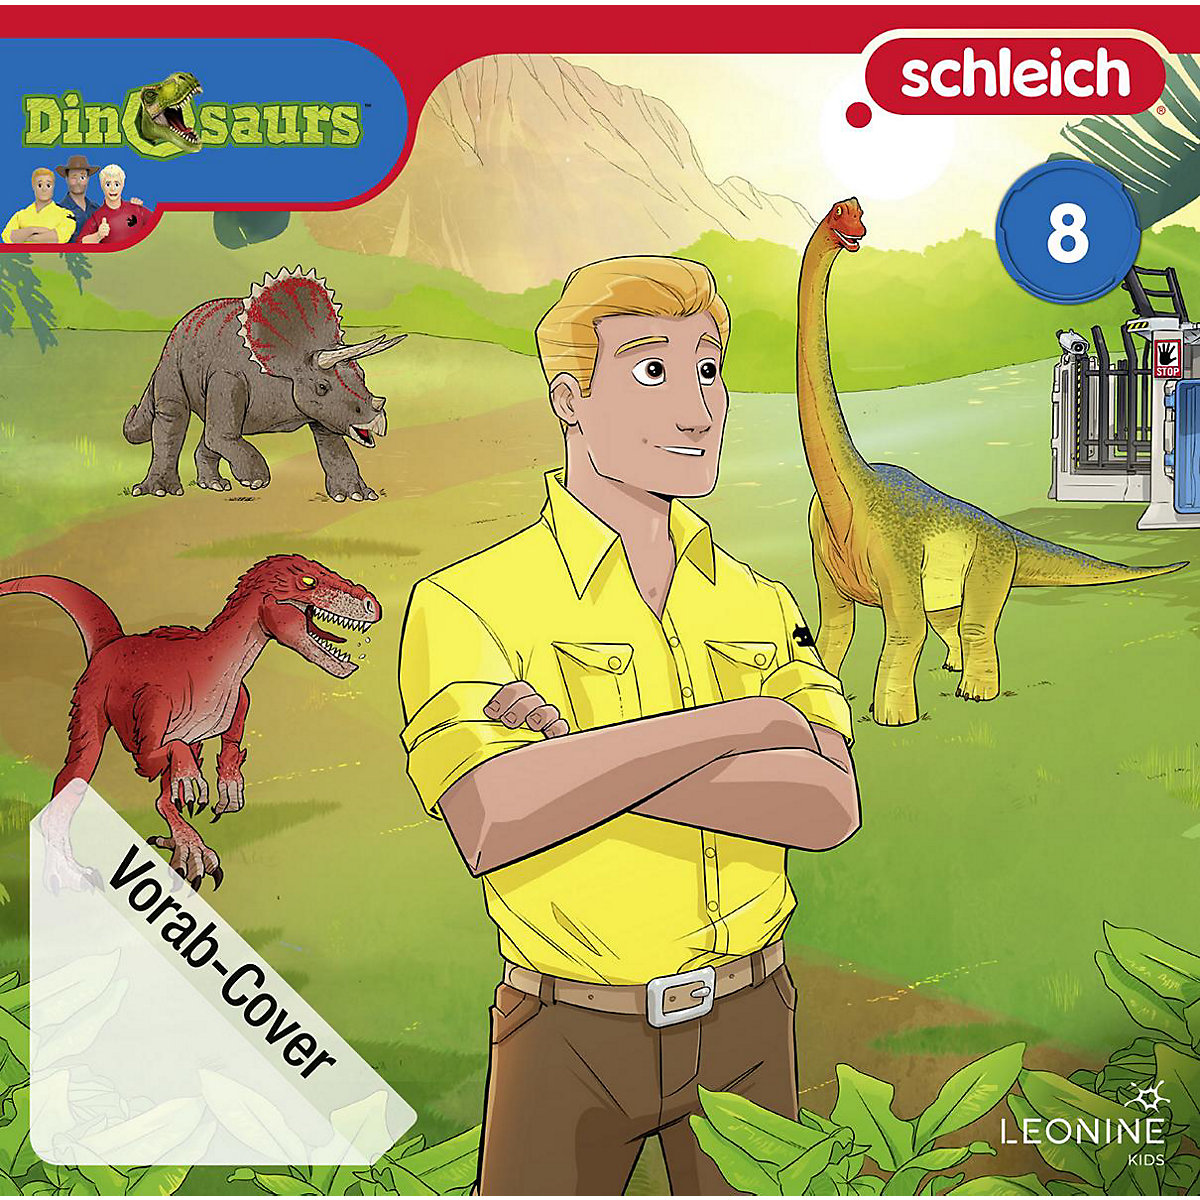 LEONINE Schleich Dinosaurs (08)